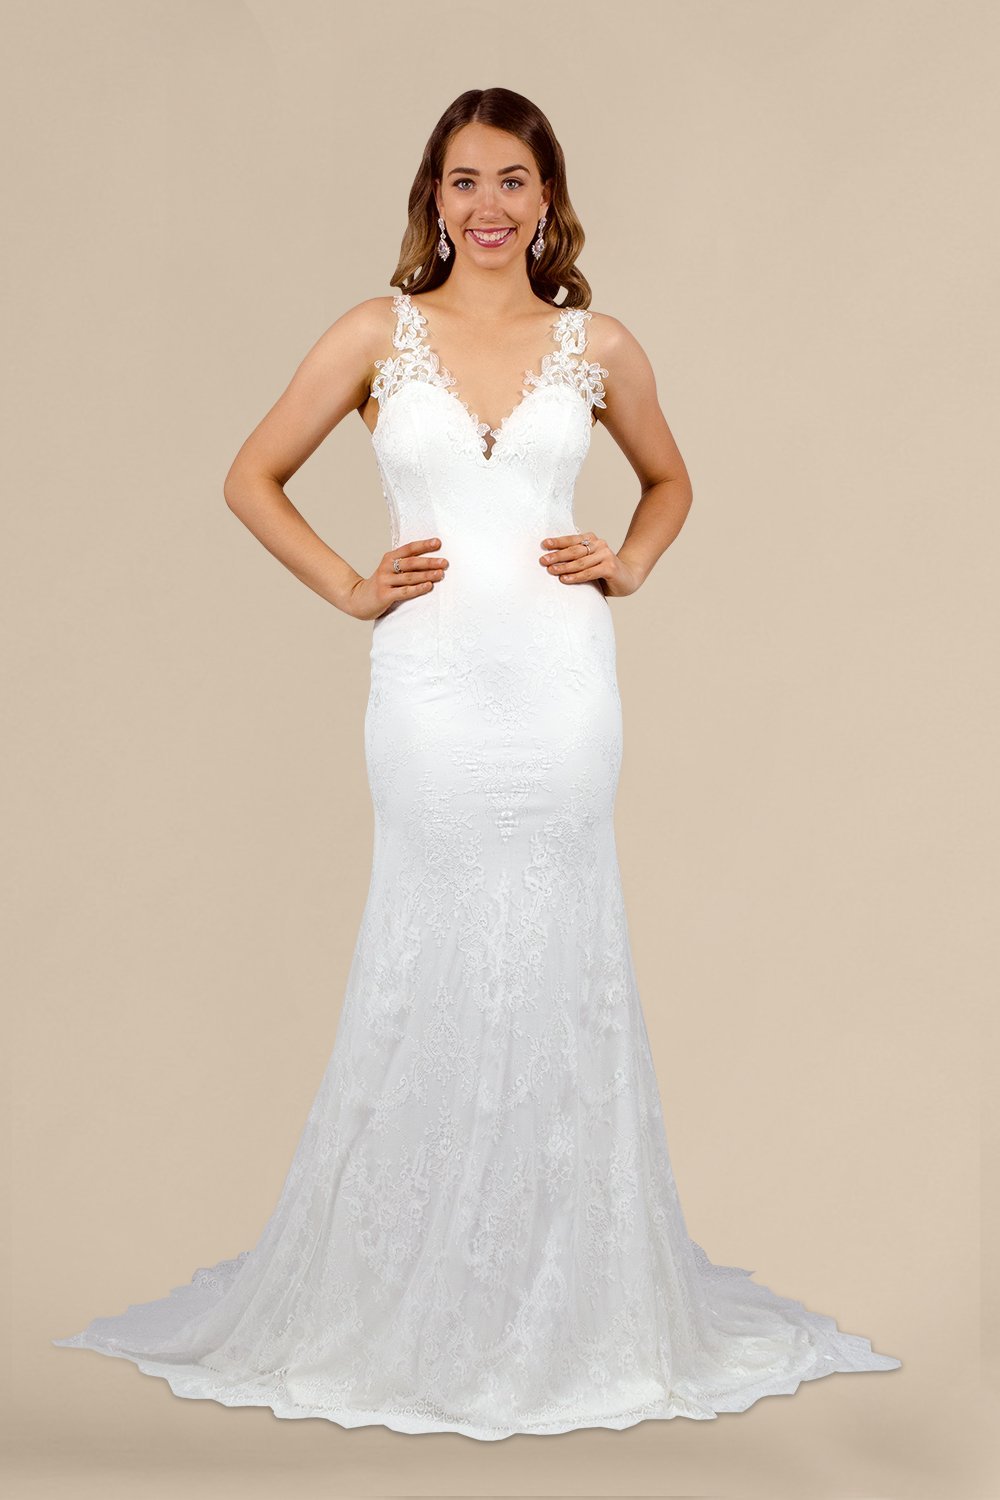 custom bridal wedding dress dressmaker lace wedding gown envious bridal & formal